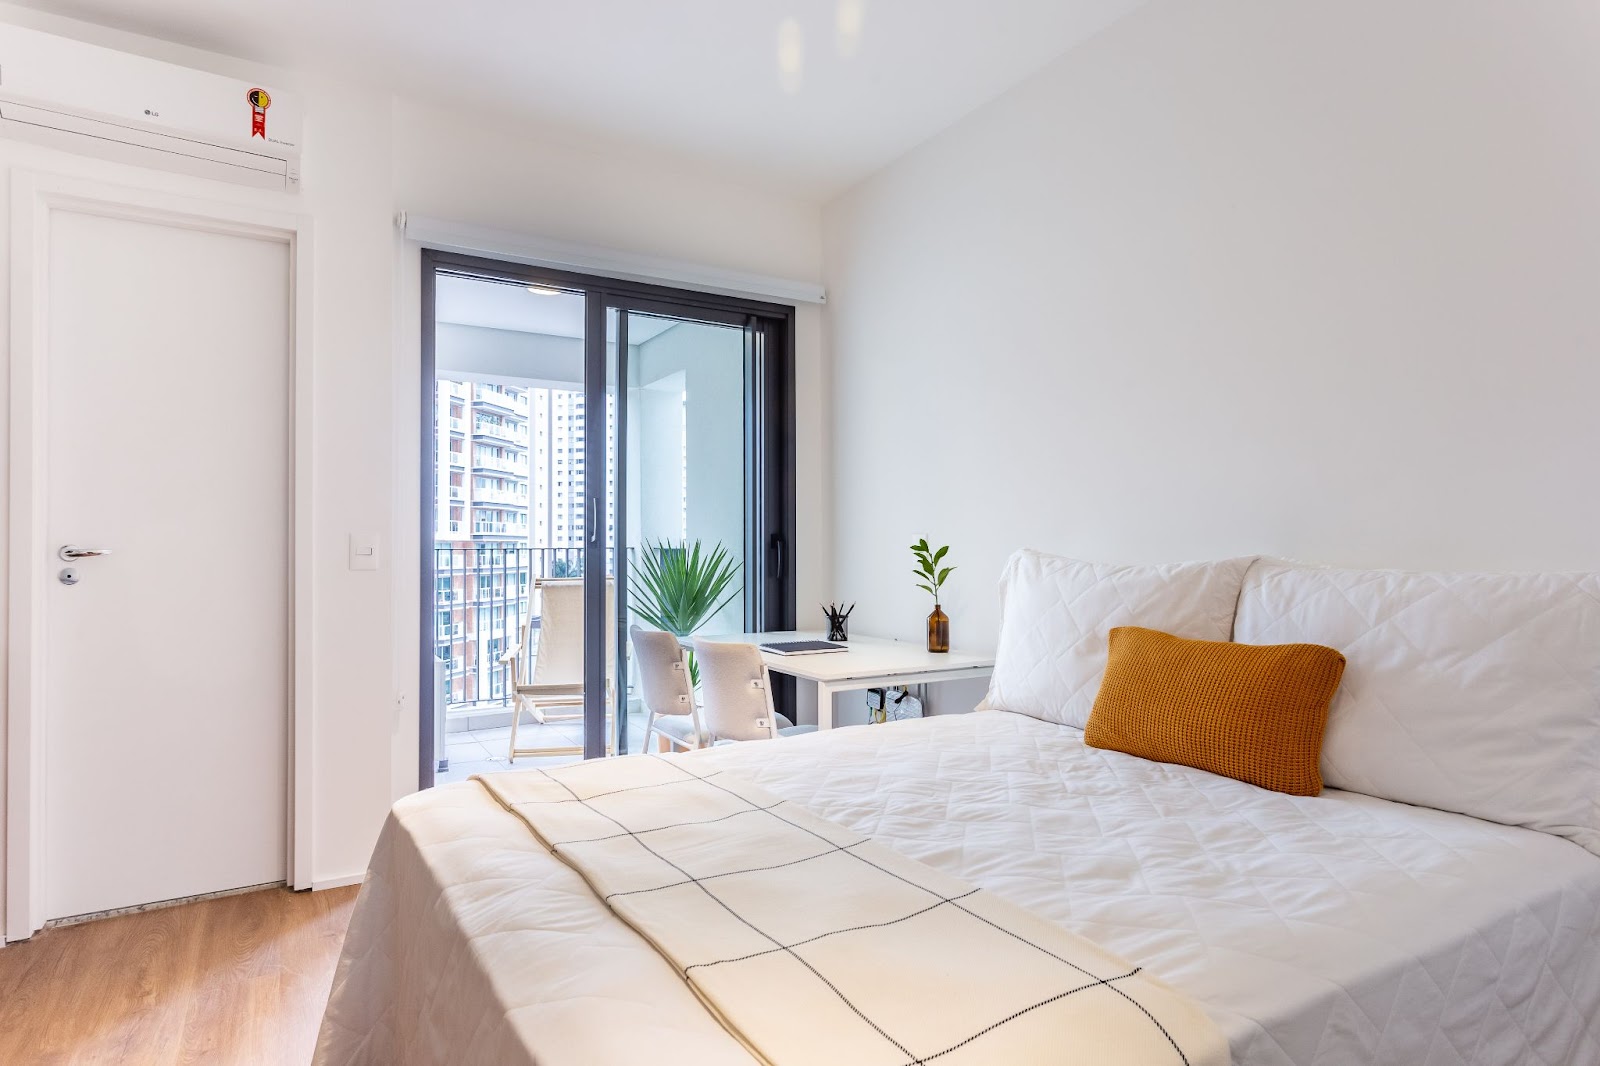 Foto de um quarto todo branco em um dos imóveis para investimento, com uma cama de casal, uma mesinha de canto e uma varanda.